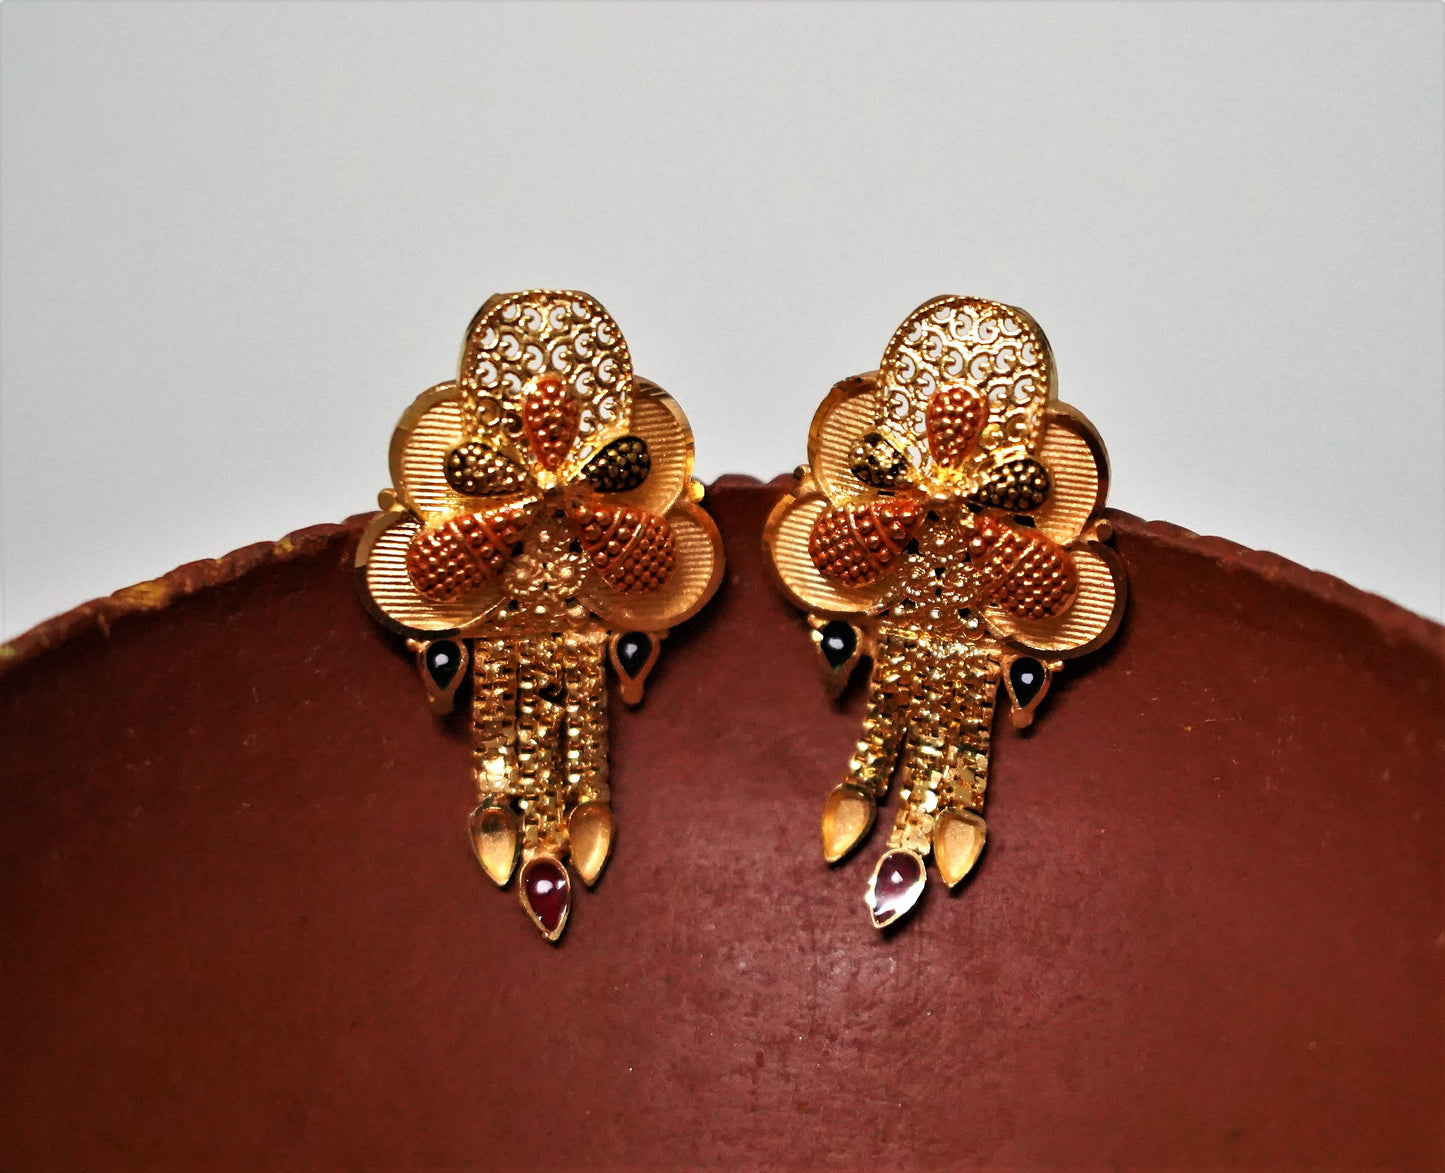 1 gram 22kt gold- earring